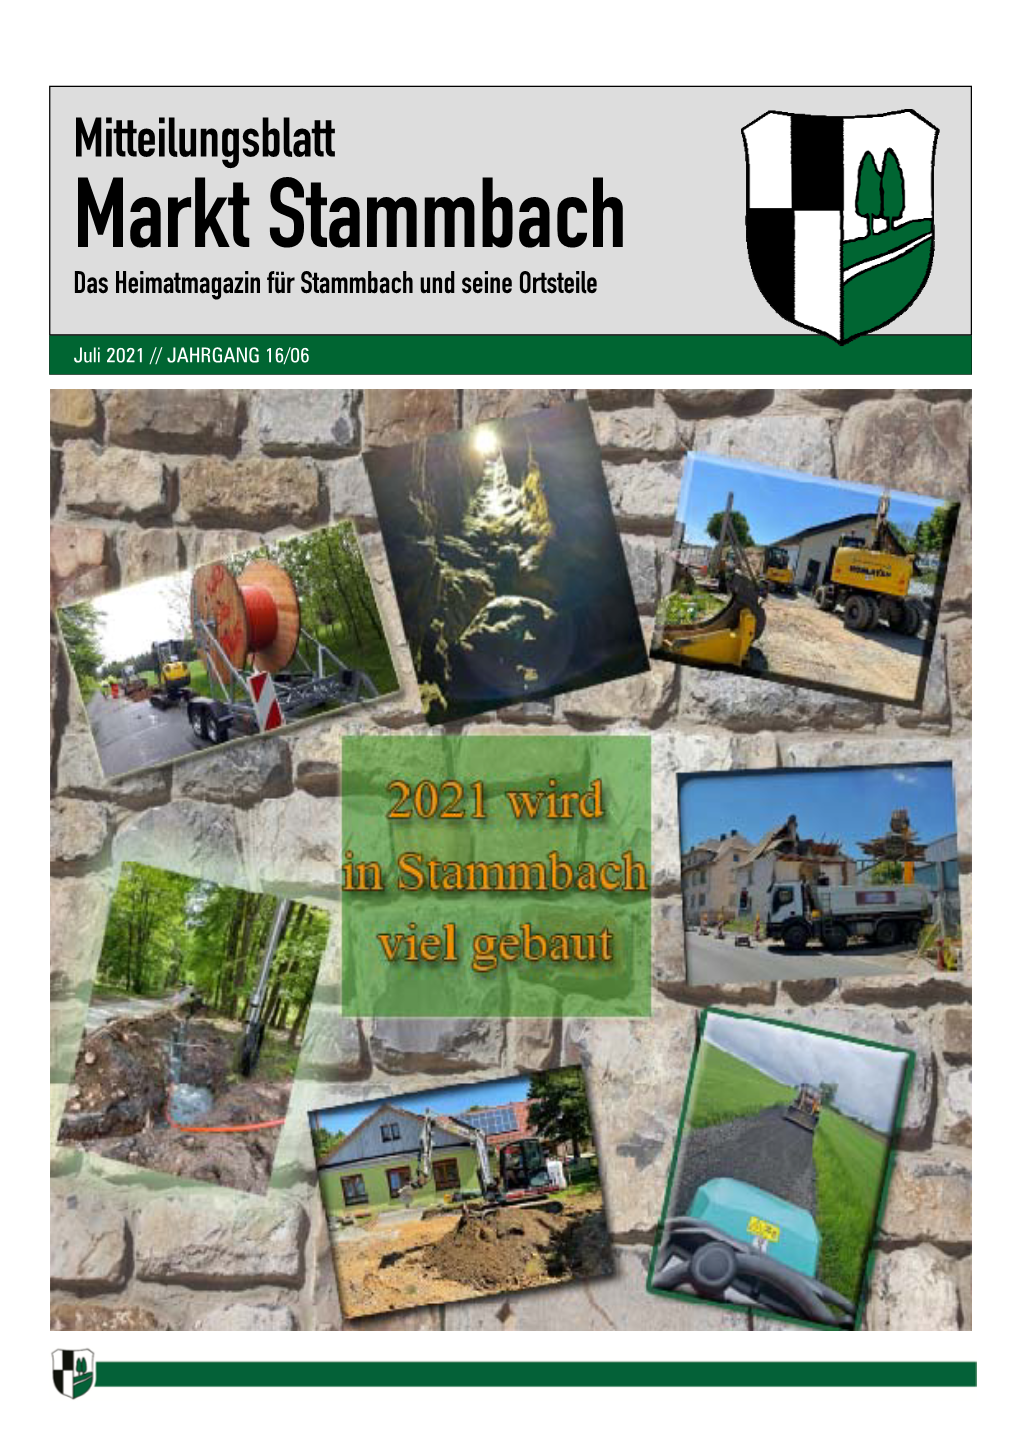 Mitteilungsblatt Stammbach Juli 2021